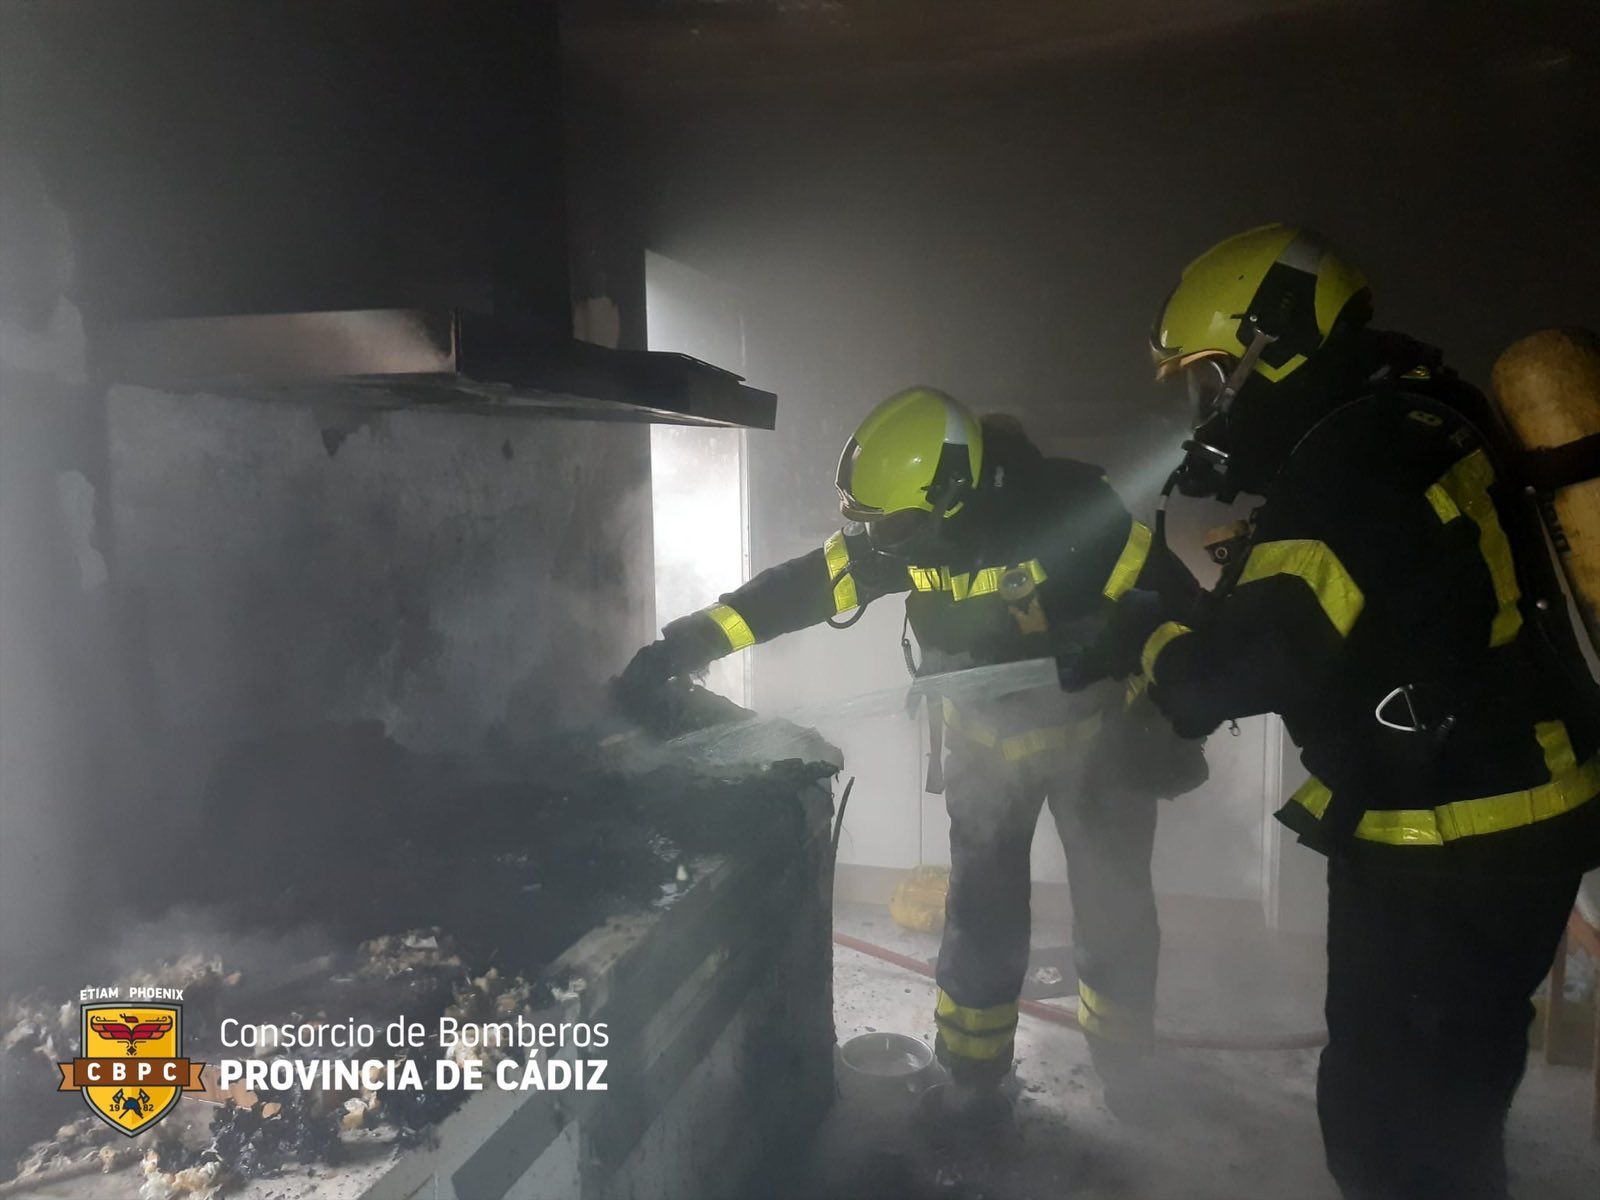 El incendio se ha originado en la cocina y se ha producido al prenderse fuego la freidora.